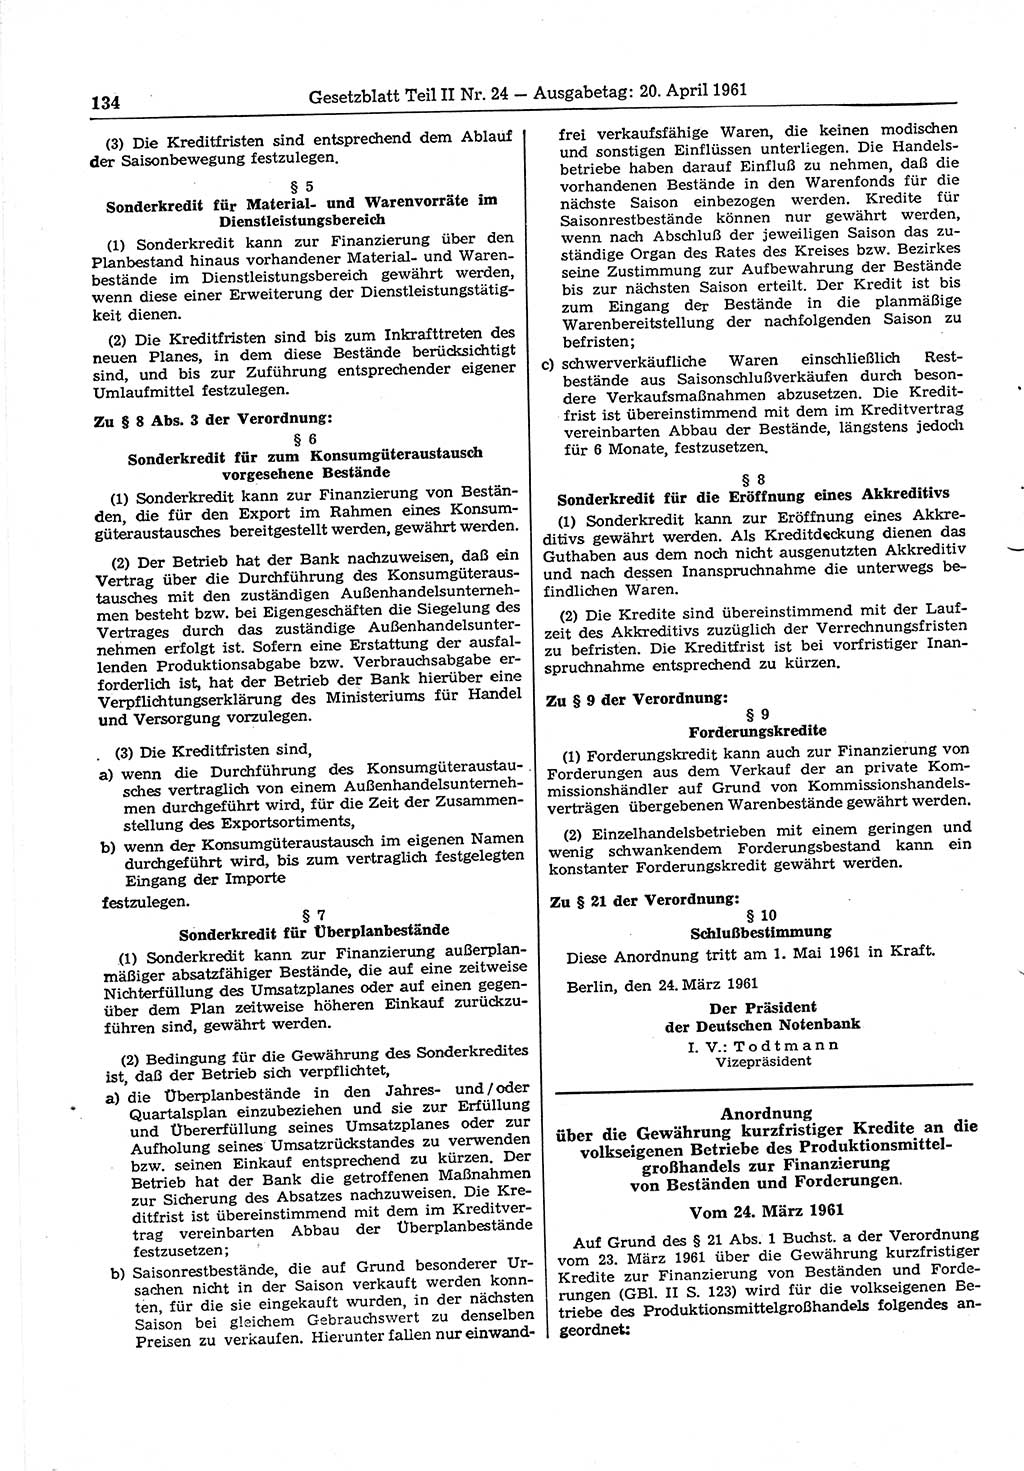 Gesetzblatt (GBl.) der Deutschen Demokratischen Republik (DDR) Teil ⅠⅠ 1961, Seite 134 (GBl. DDR ⅠⅠ 1961, S. 134)